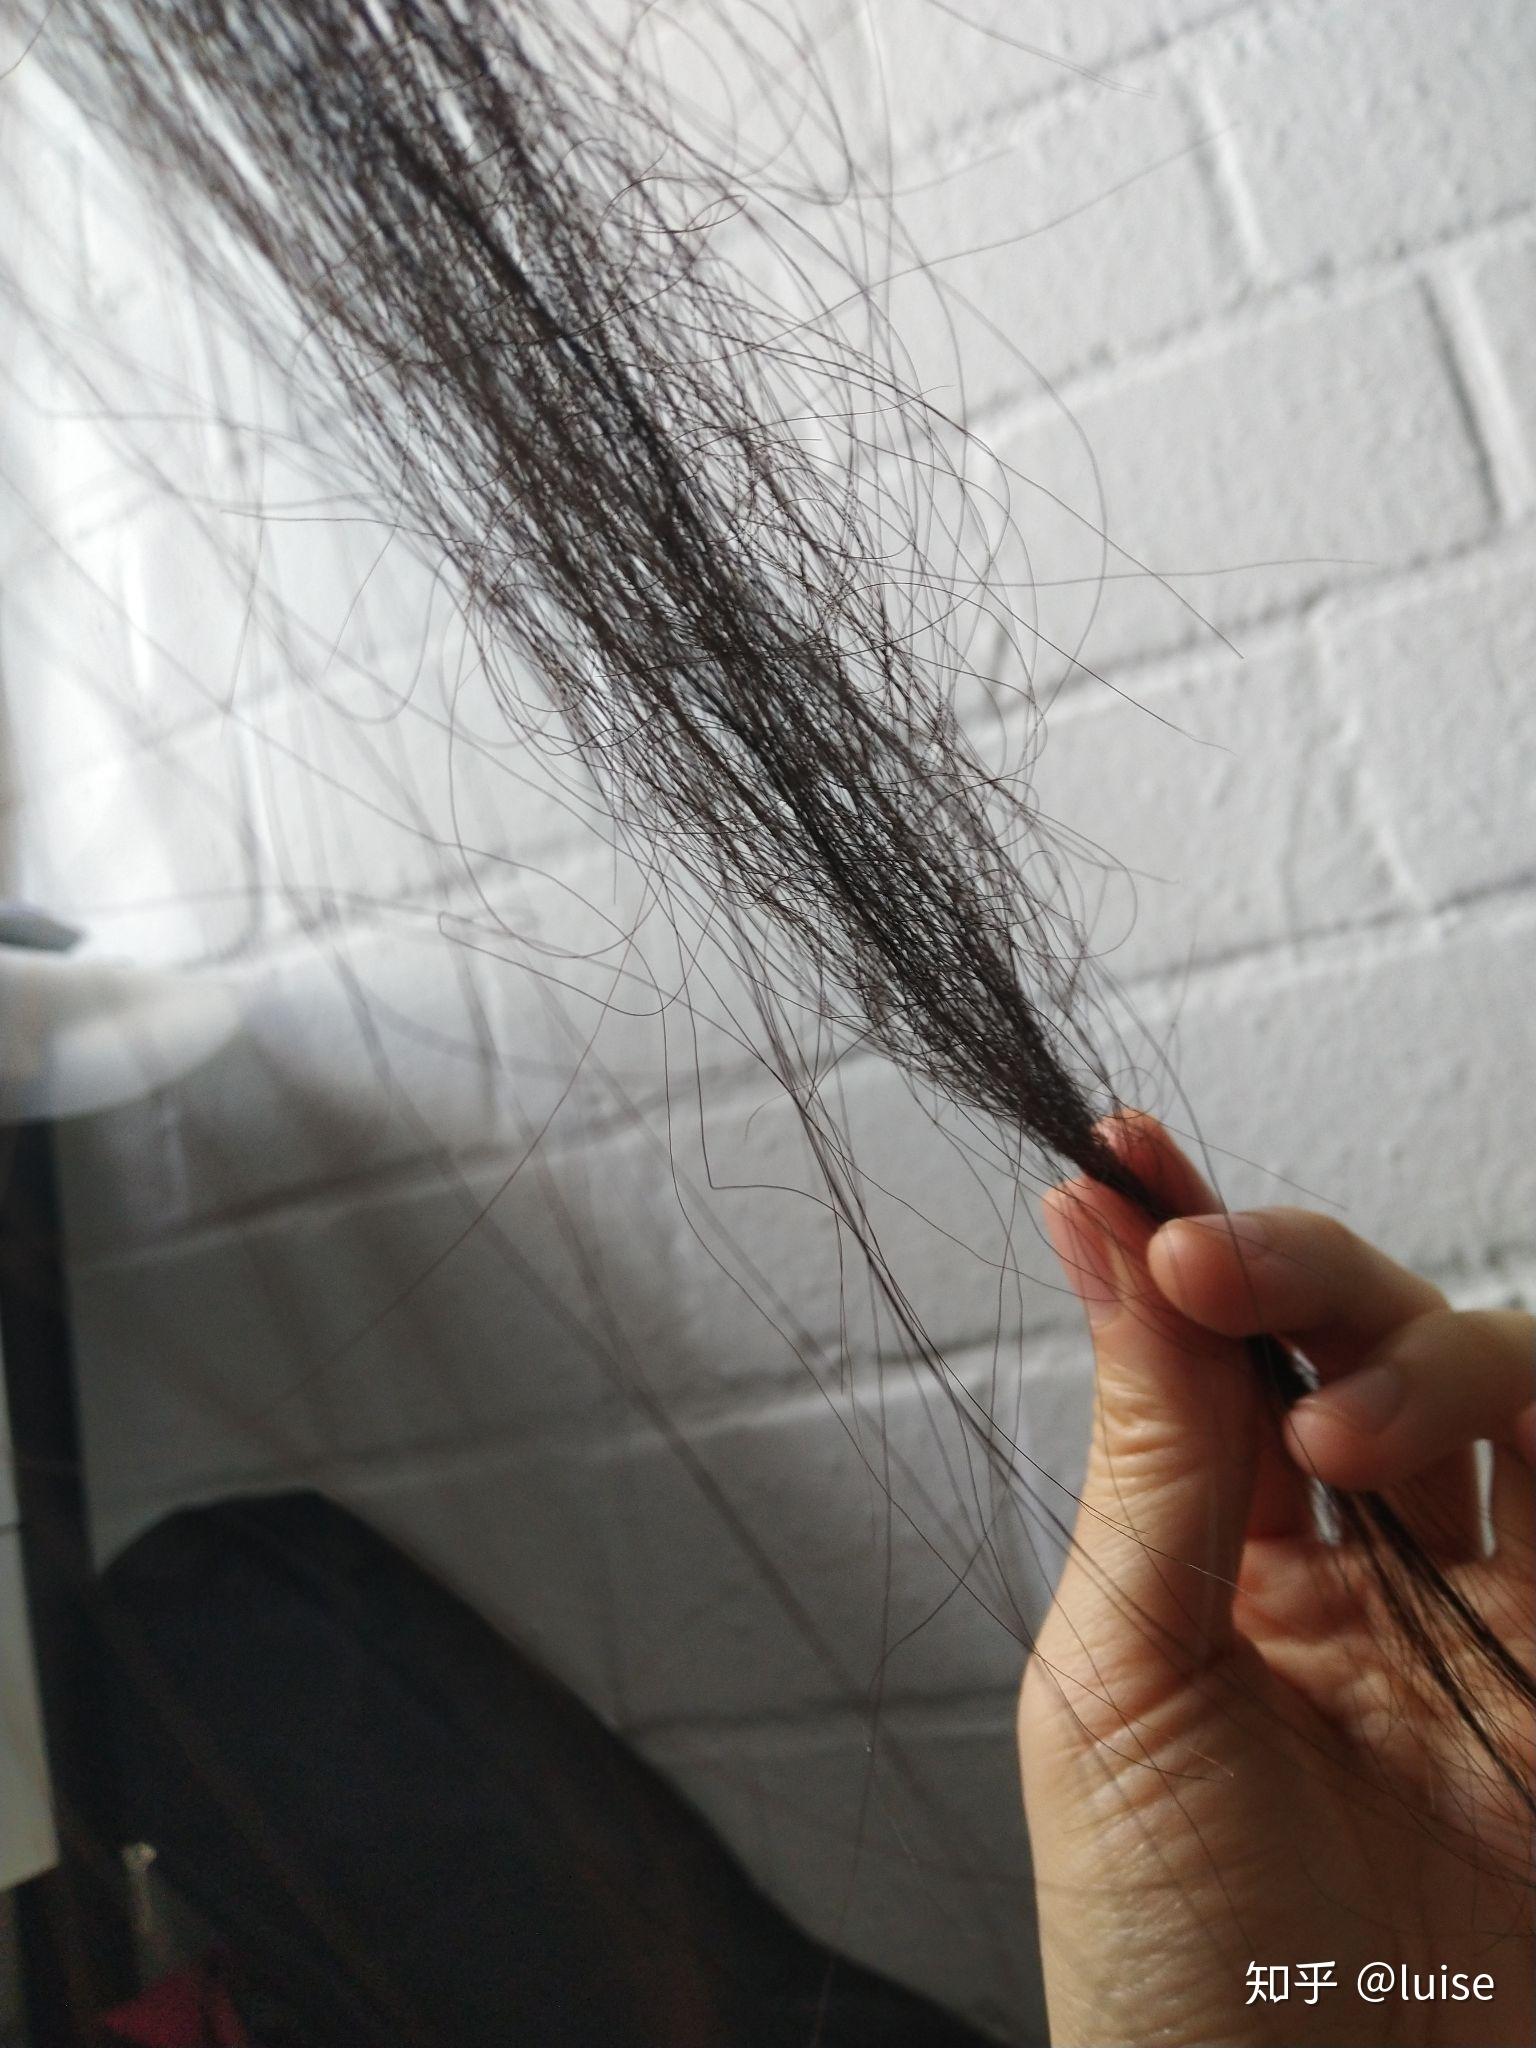 为什么我会有部分头发的发尾像钢丝一样弯曲是什么原因造成的属于沙发